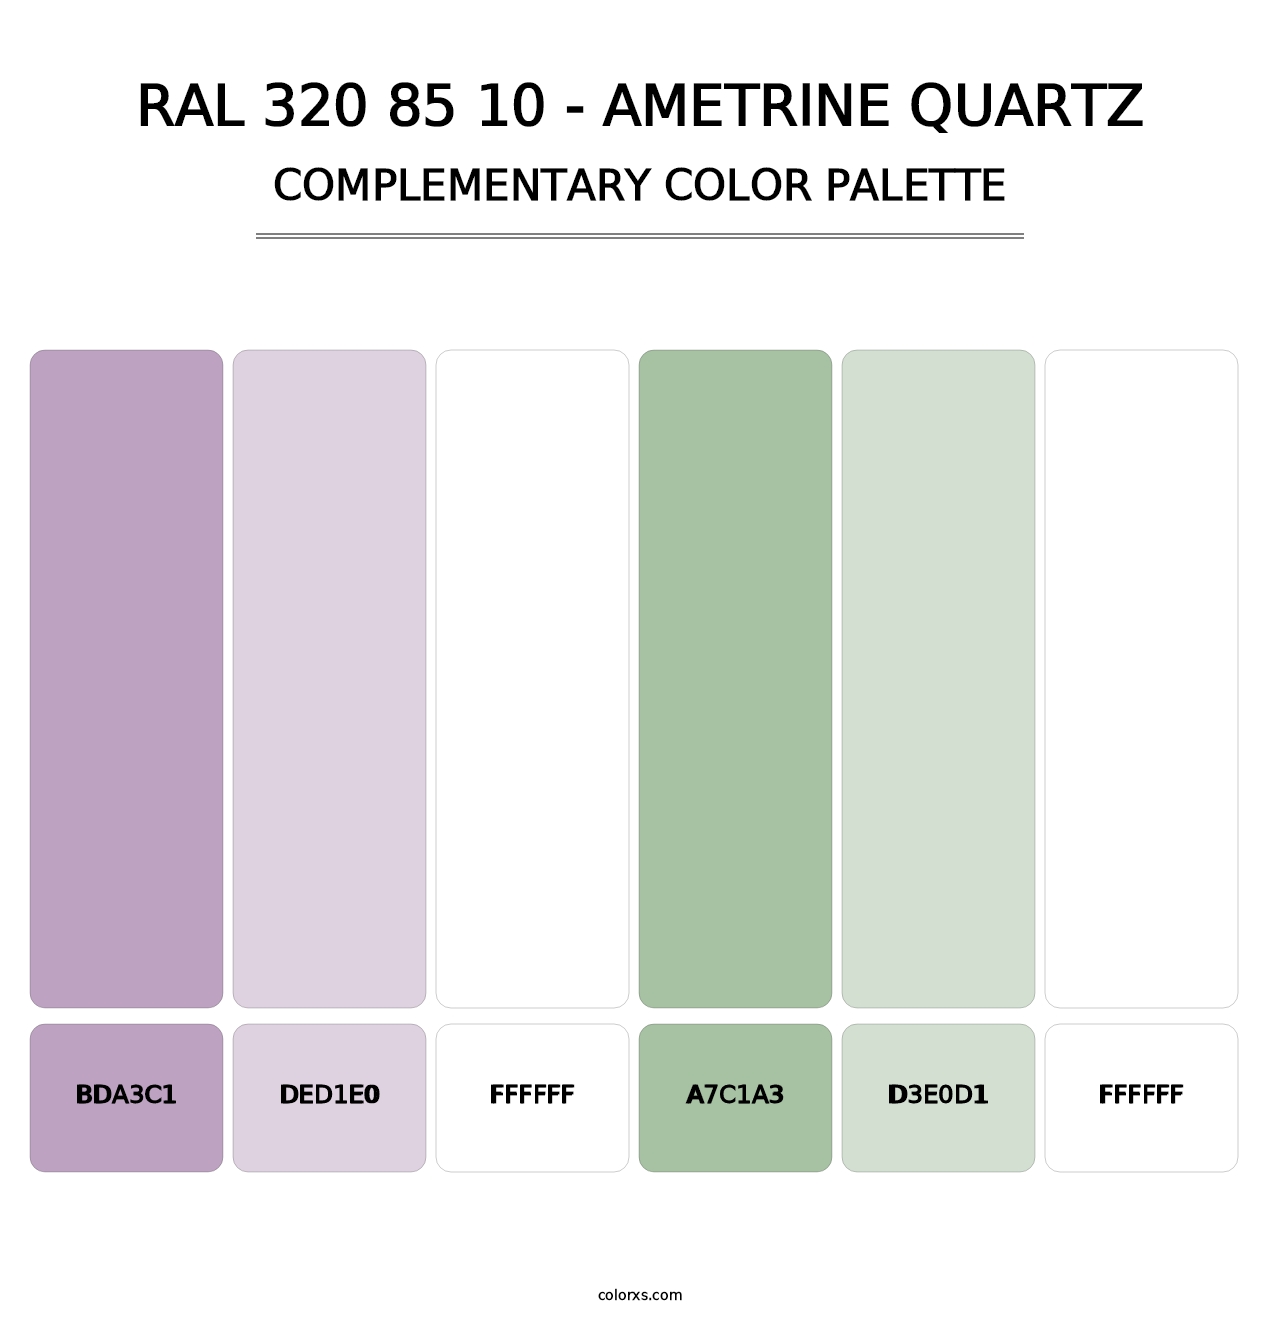 RAL 320 85 10 - Ametrine Quartz - Complementary Color Palette